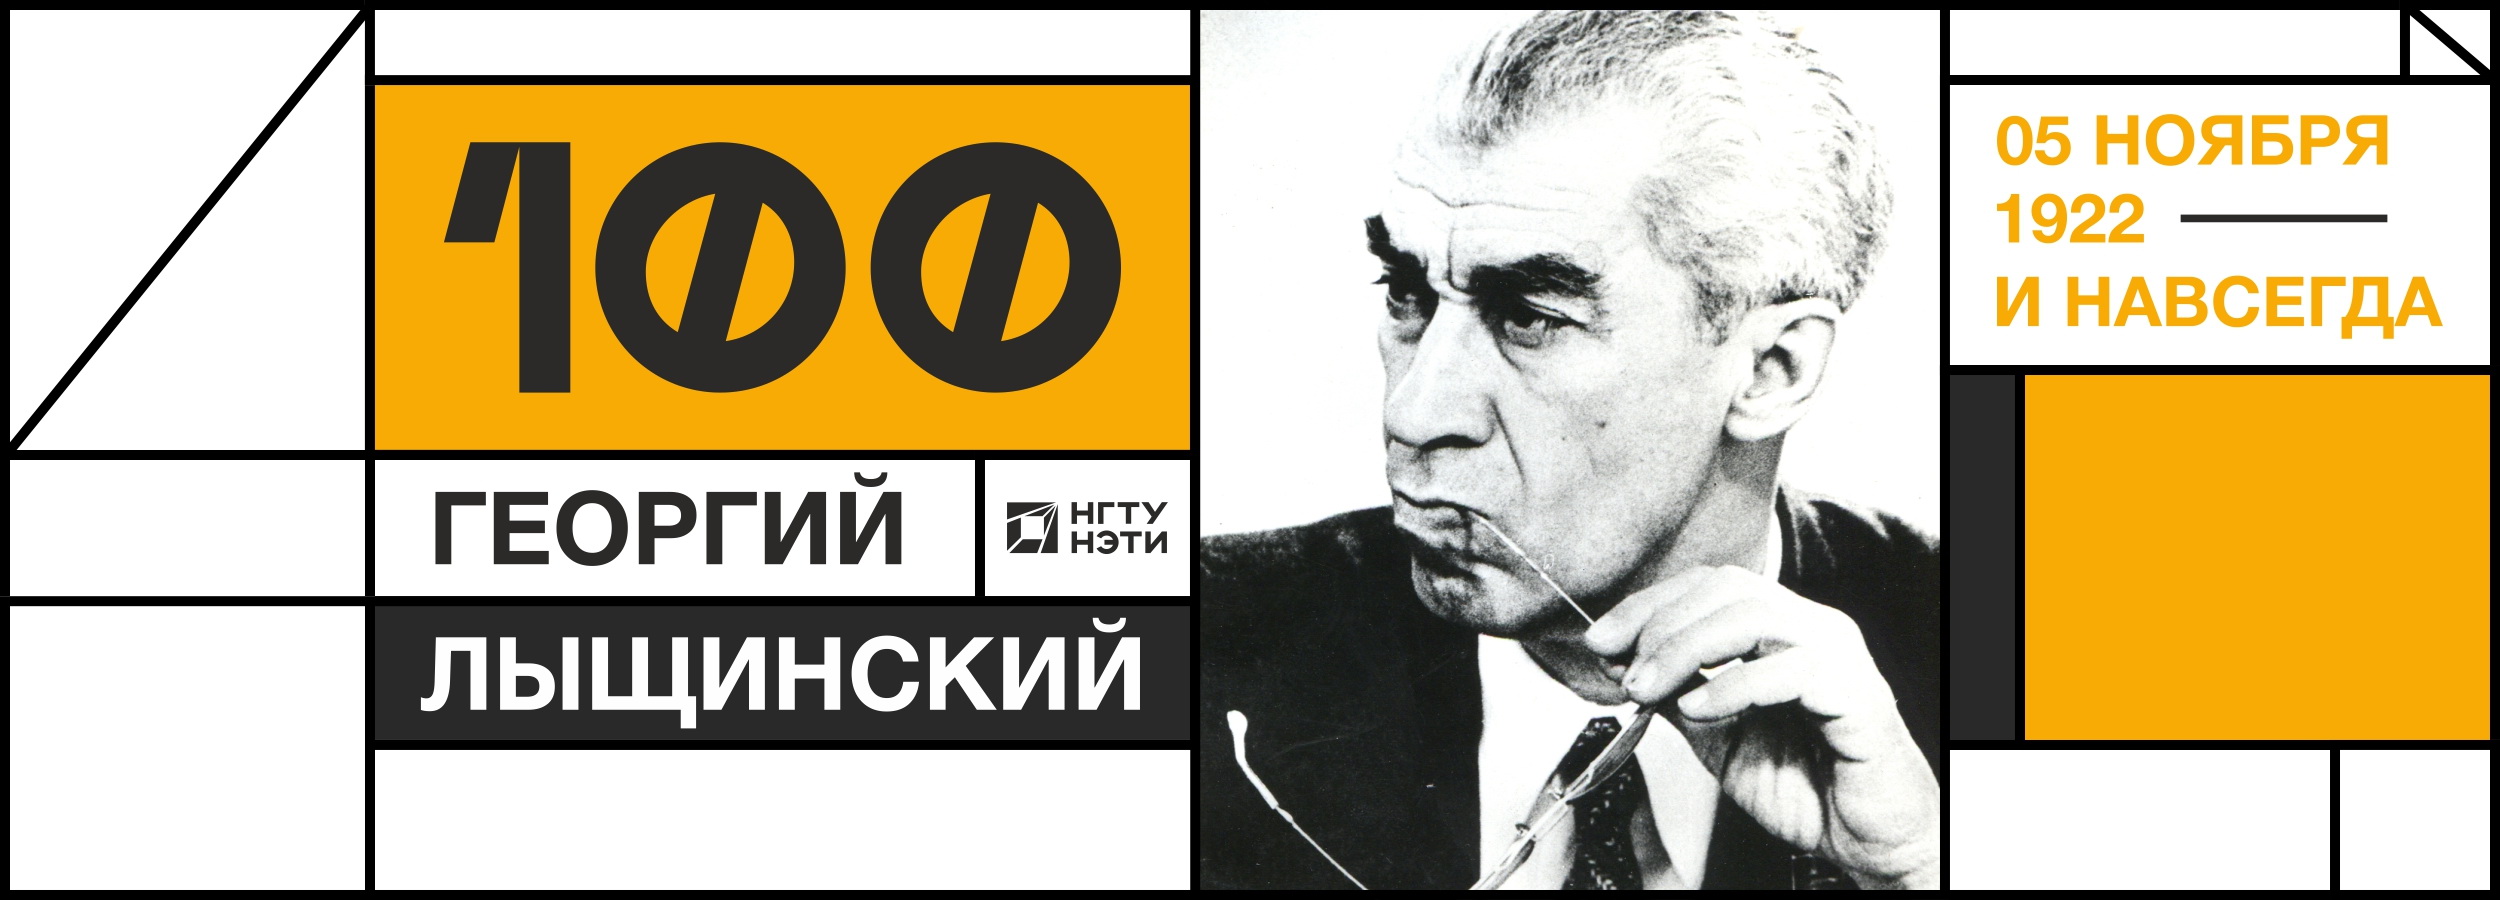 100-летие Г.П. Лыщинского